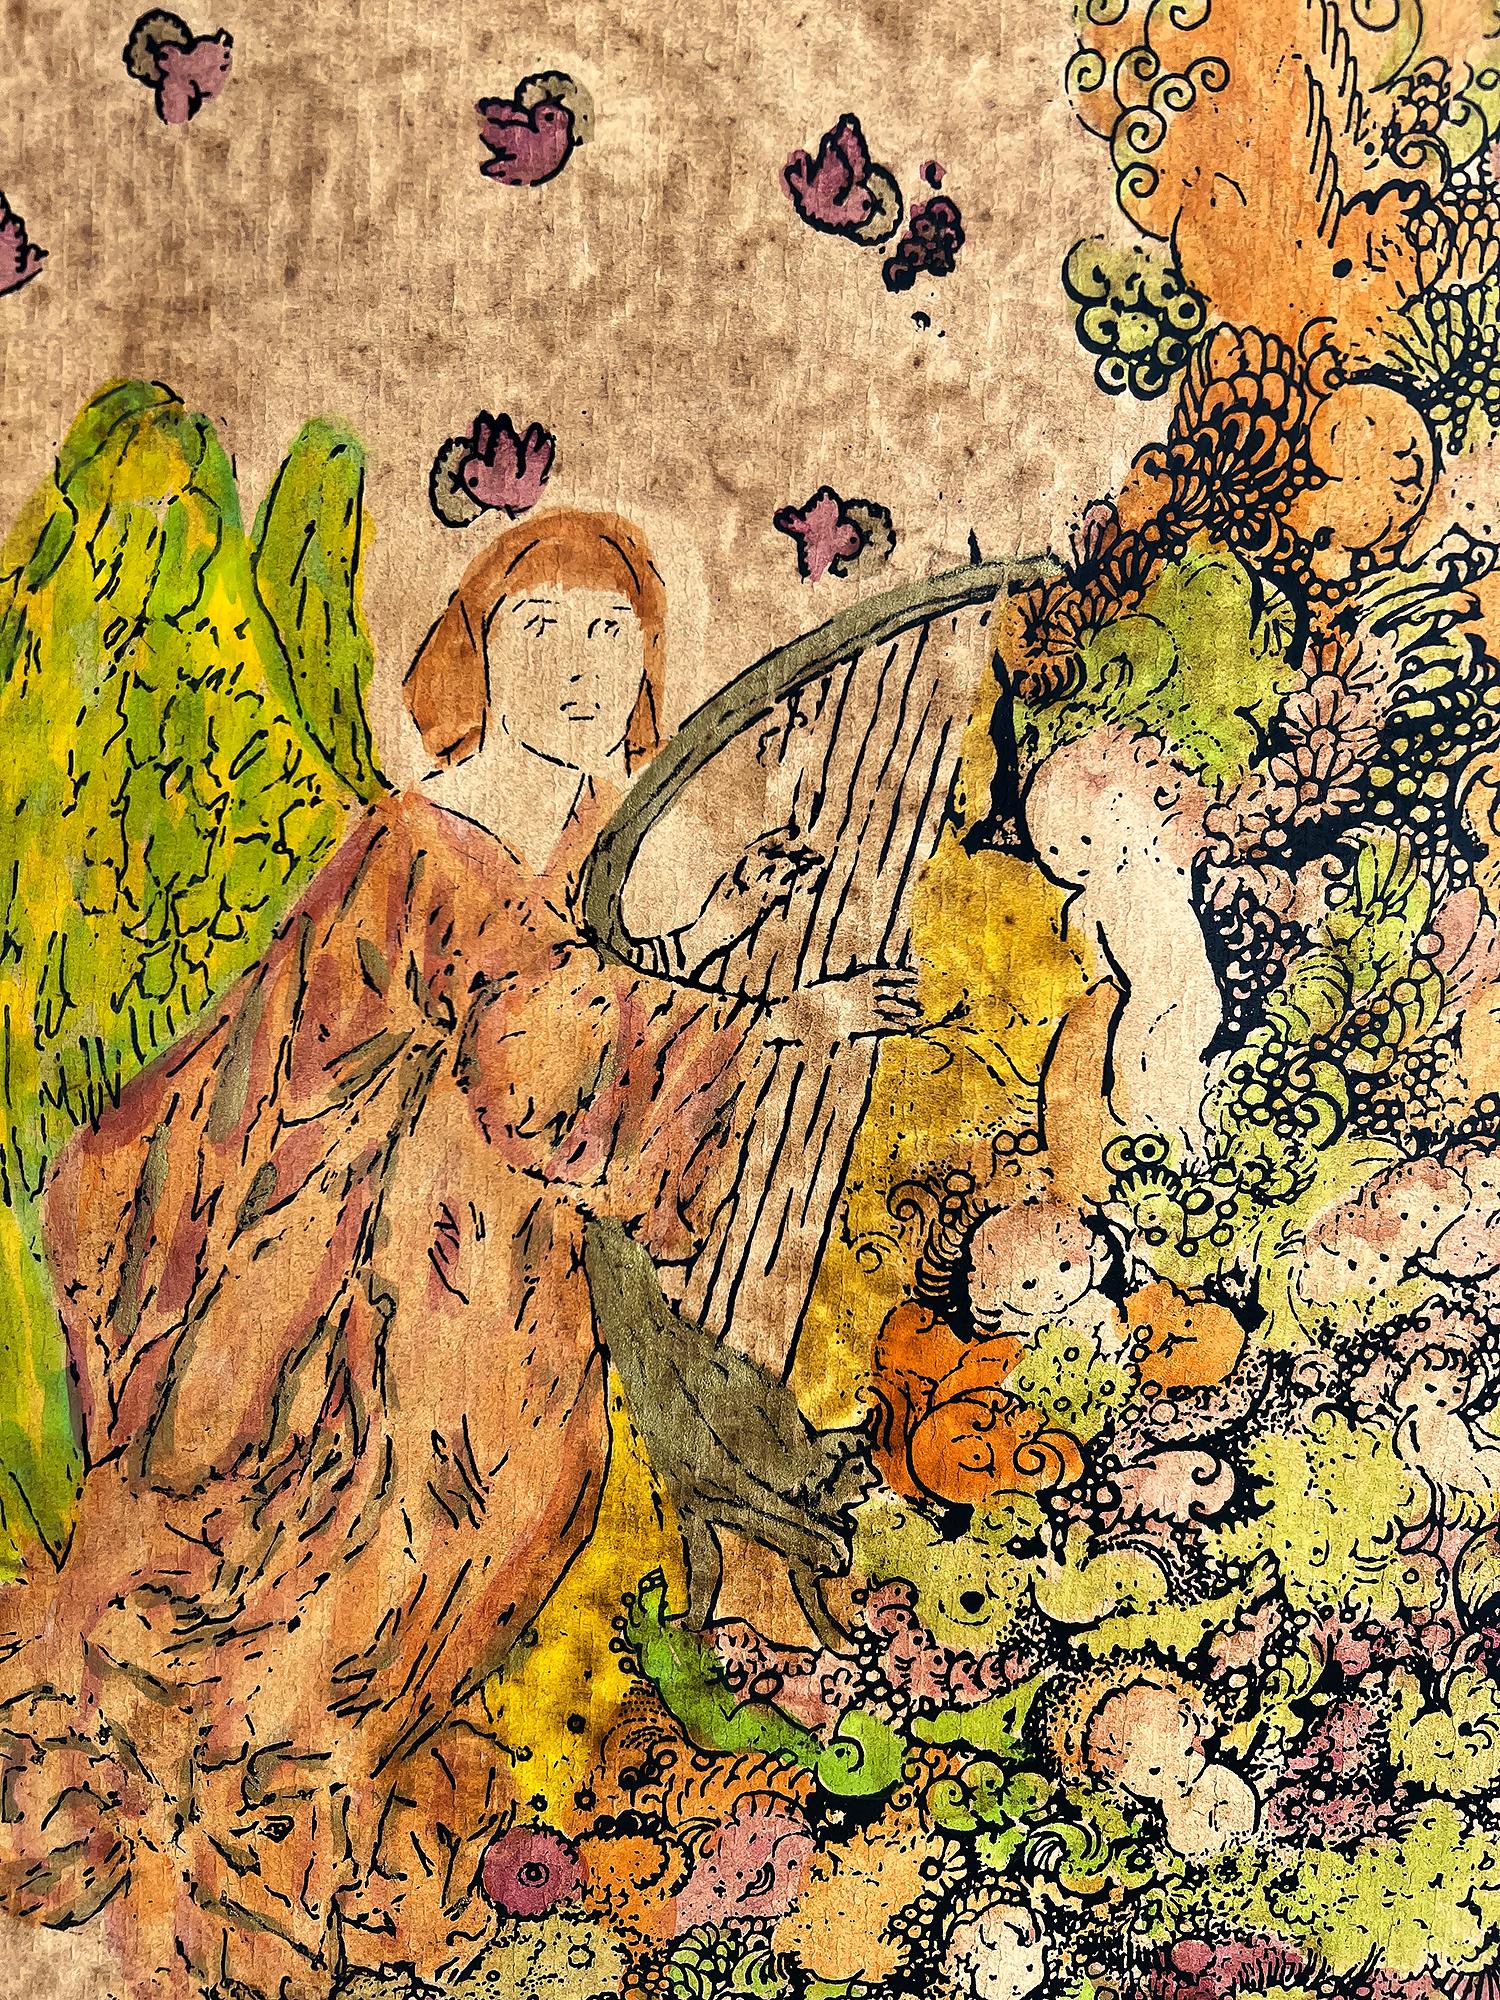 Angle spielt Harfe mit Tauben, gekreist von Tauben, Putten – weibliche Illustratorin – Art von Katie Blackmore 